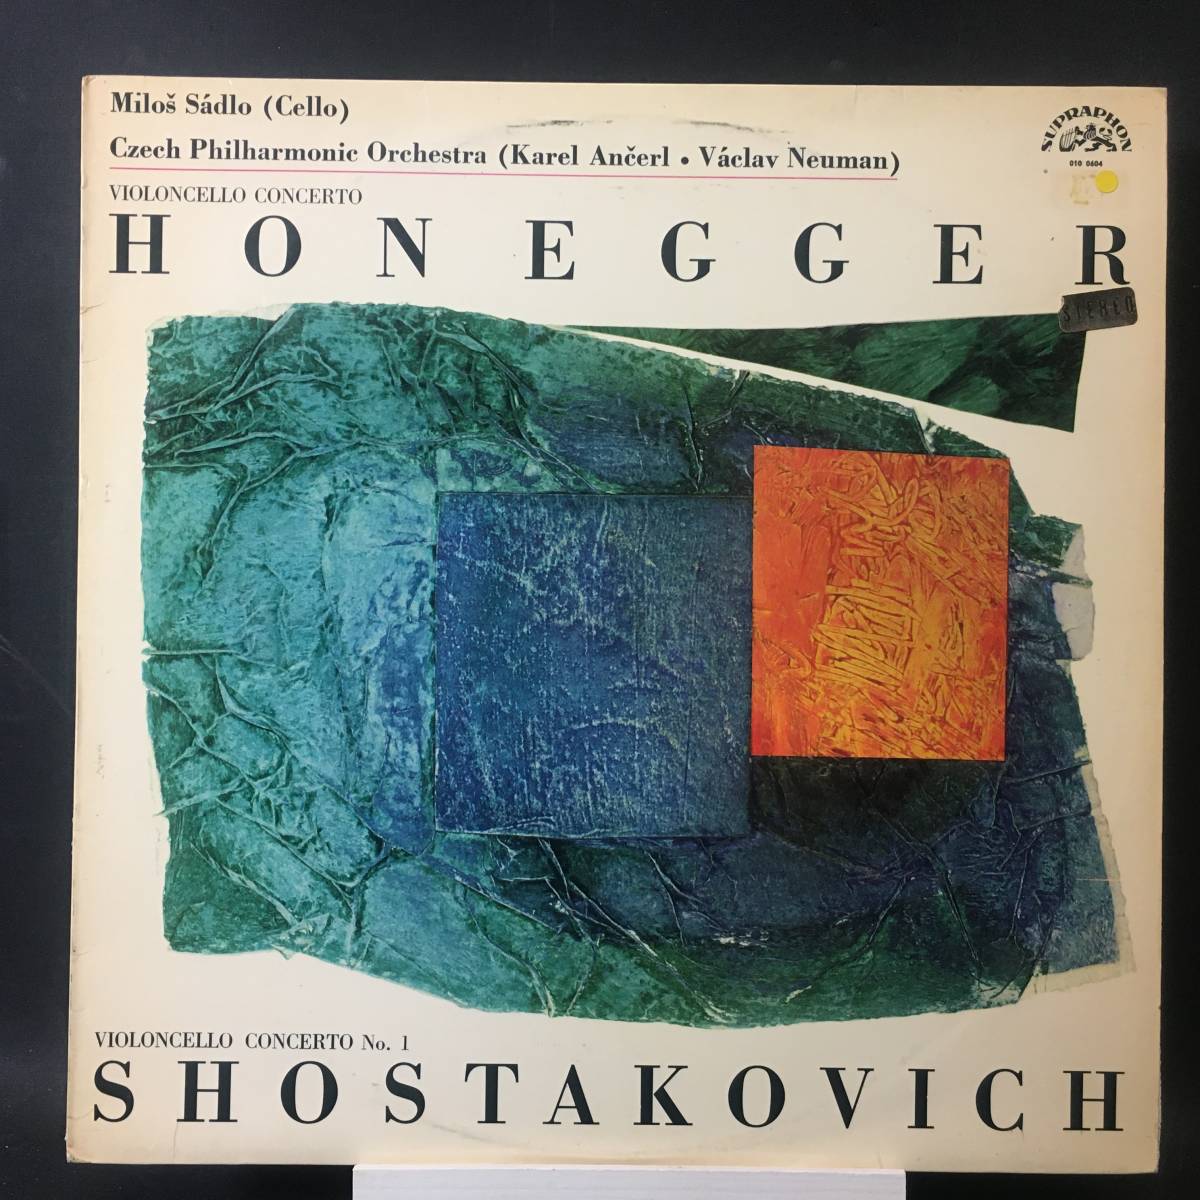 ◆ ストリングス ◆ Honegger ◆ Shostakovich ◆ Supraphon スロバキア盤_画像1